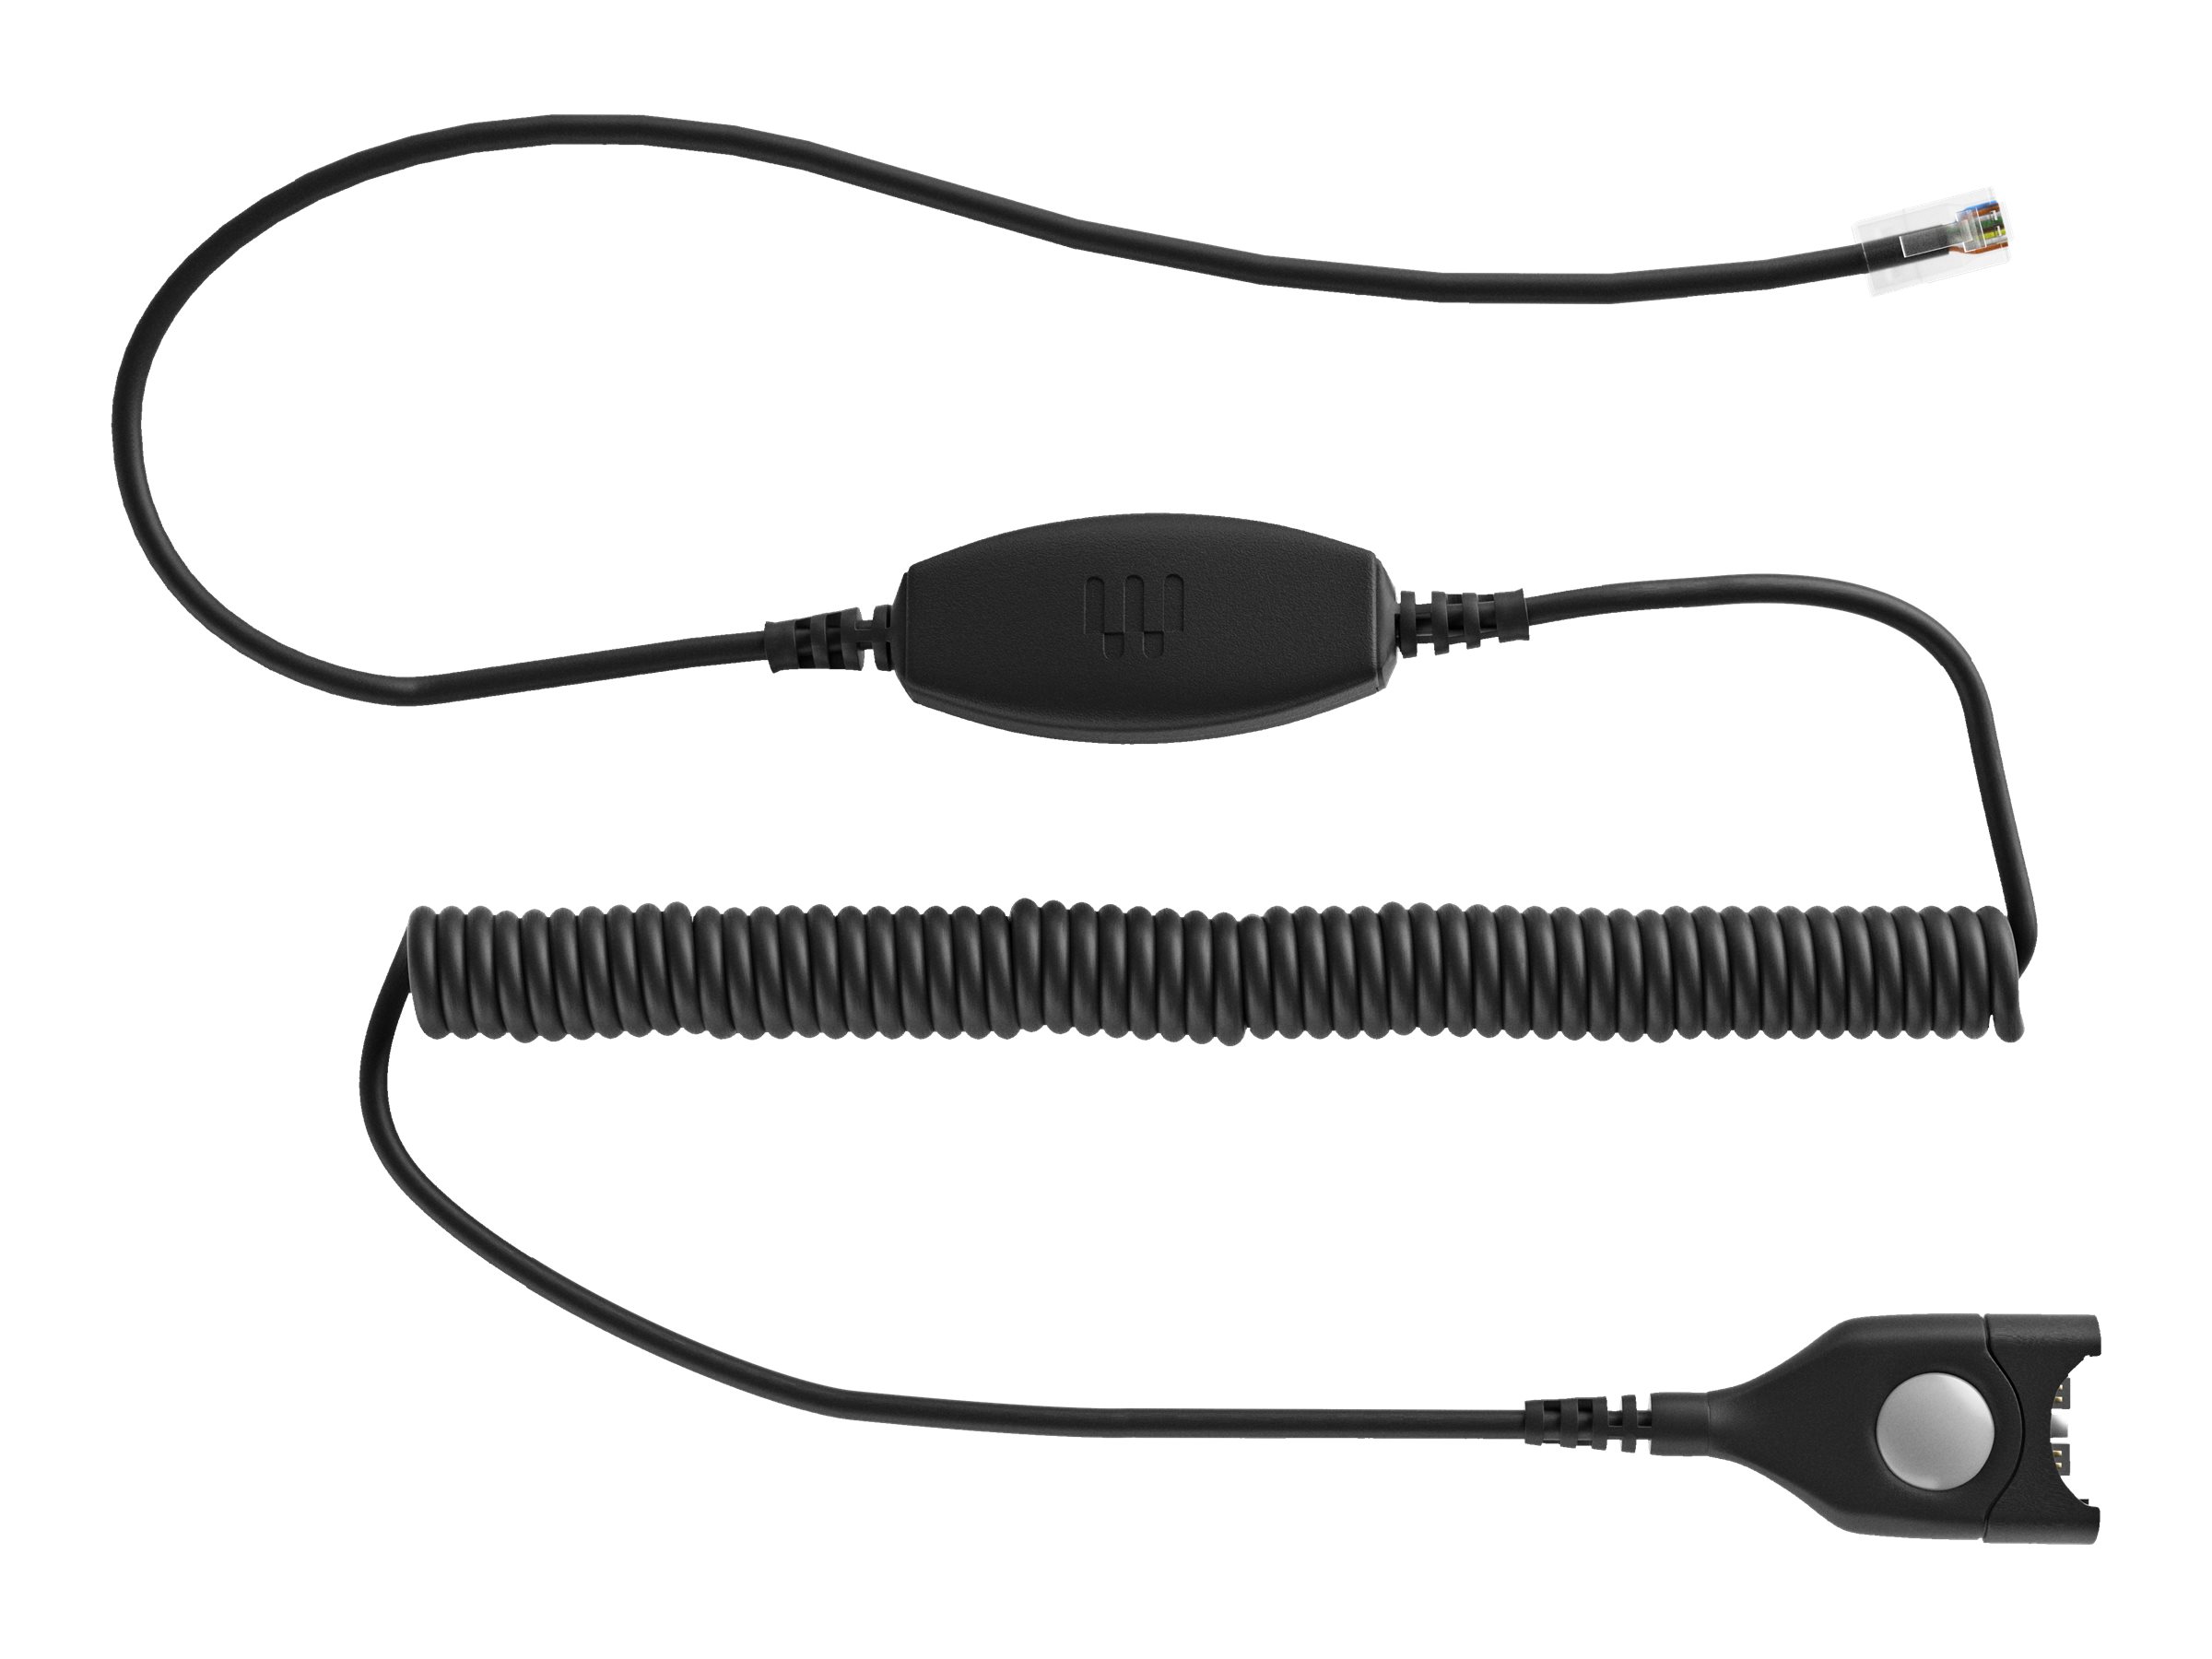 EPOS CXHS 01 - Câble pour casque micro - EasyDisconnect pour RJ-9 mâle - bobiné - 1000844 - Câbles pour écouteurs